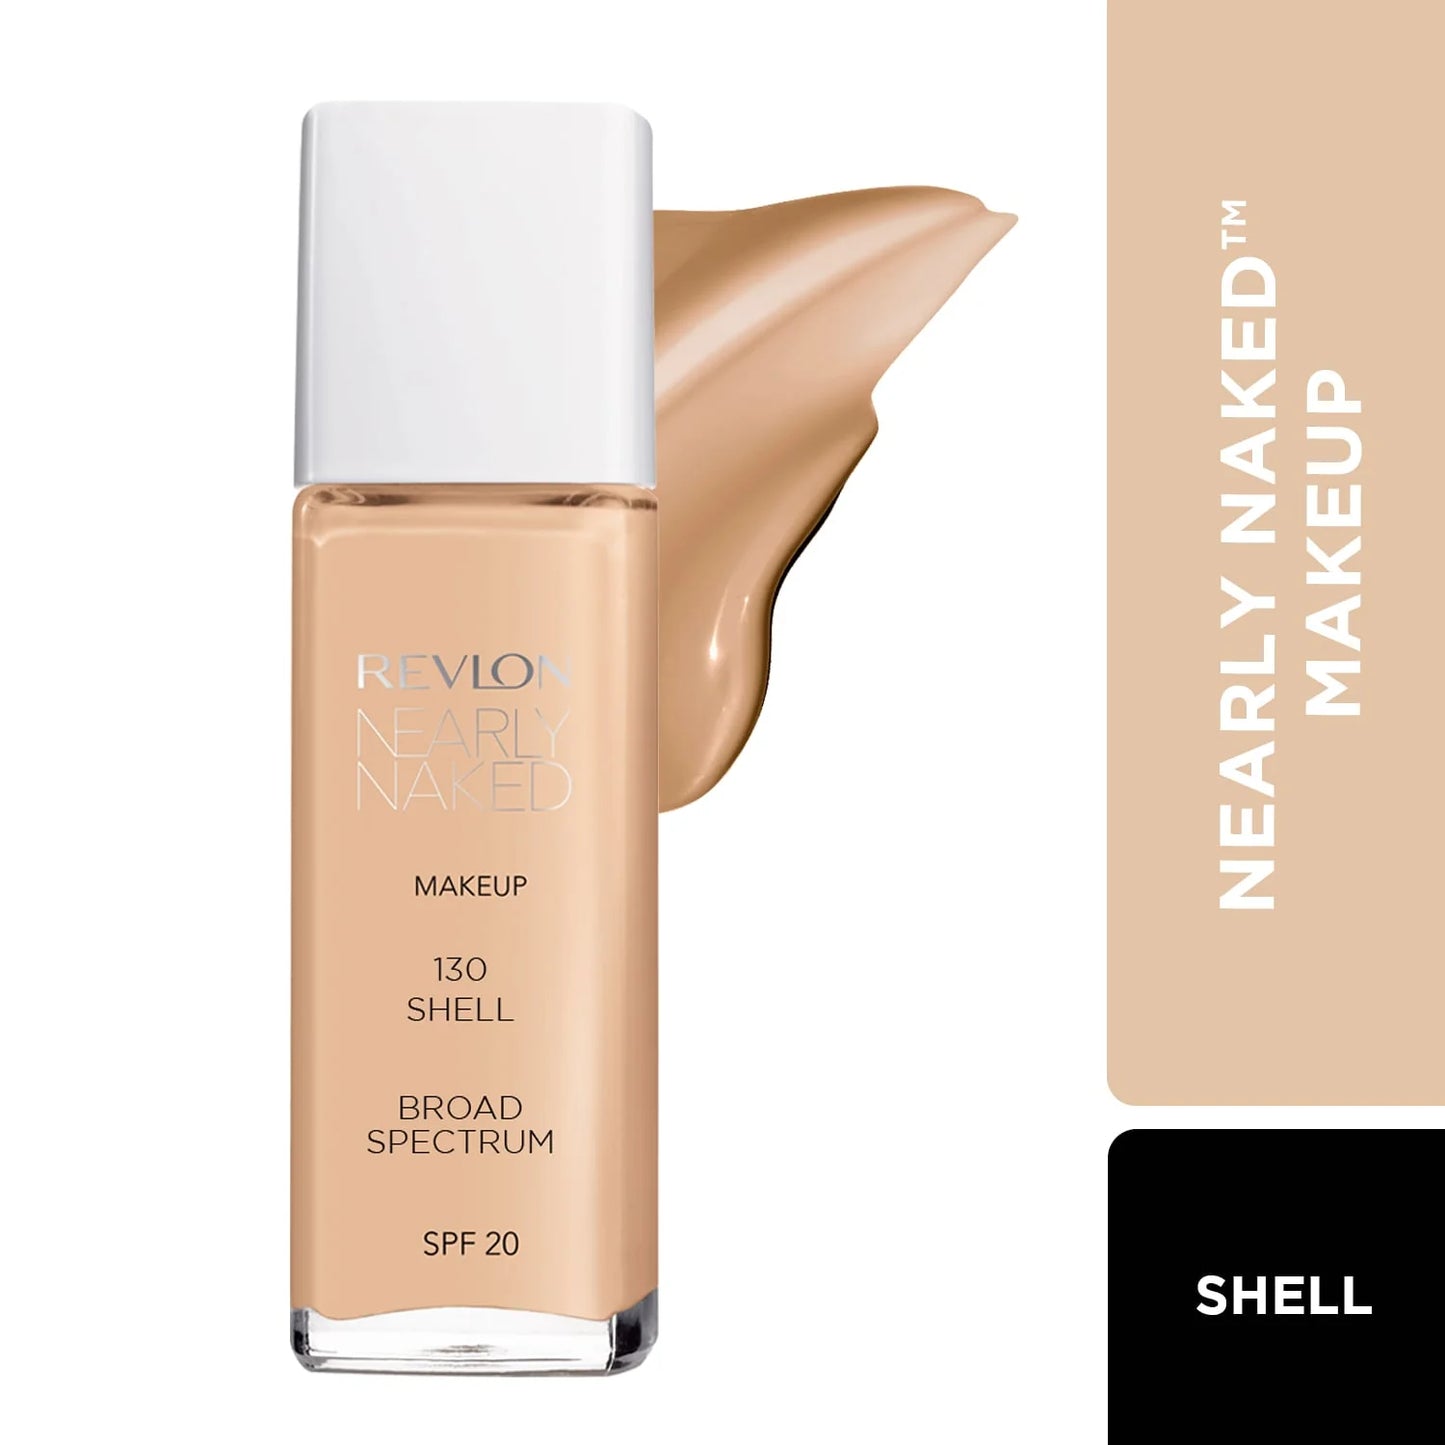 Revlon Nearly Naked™ Makeup